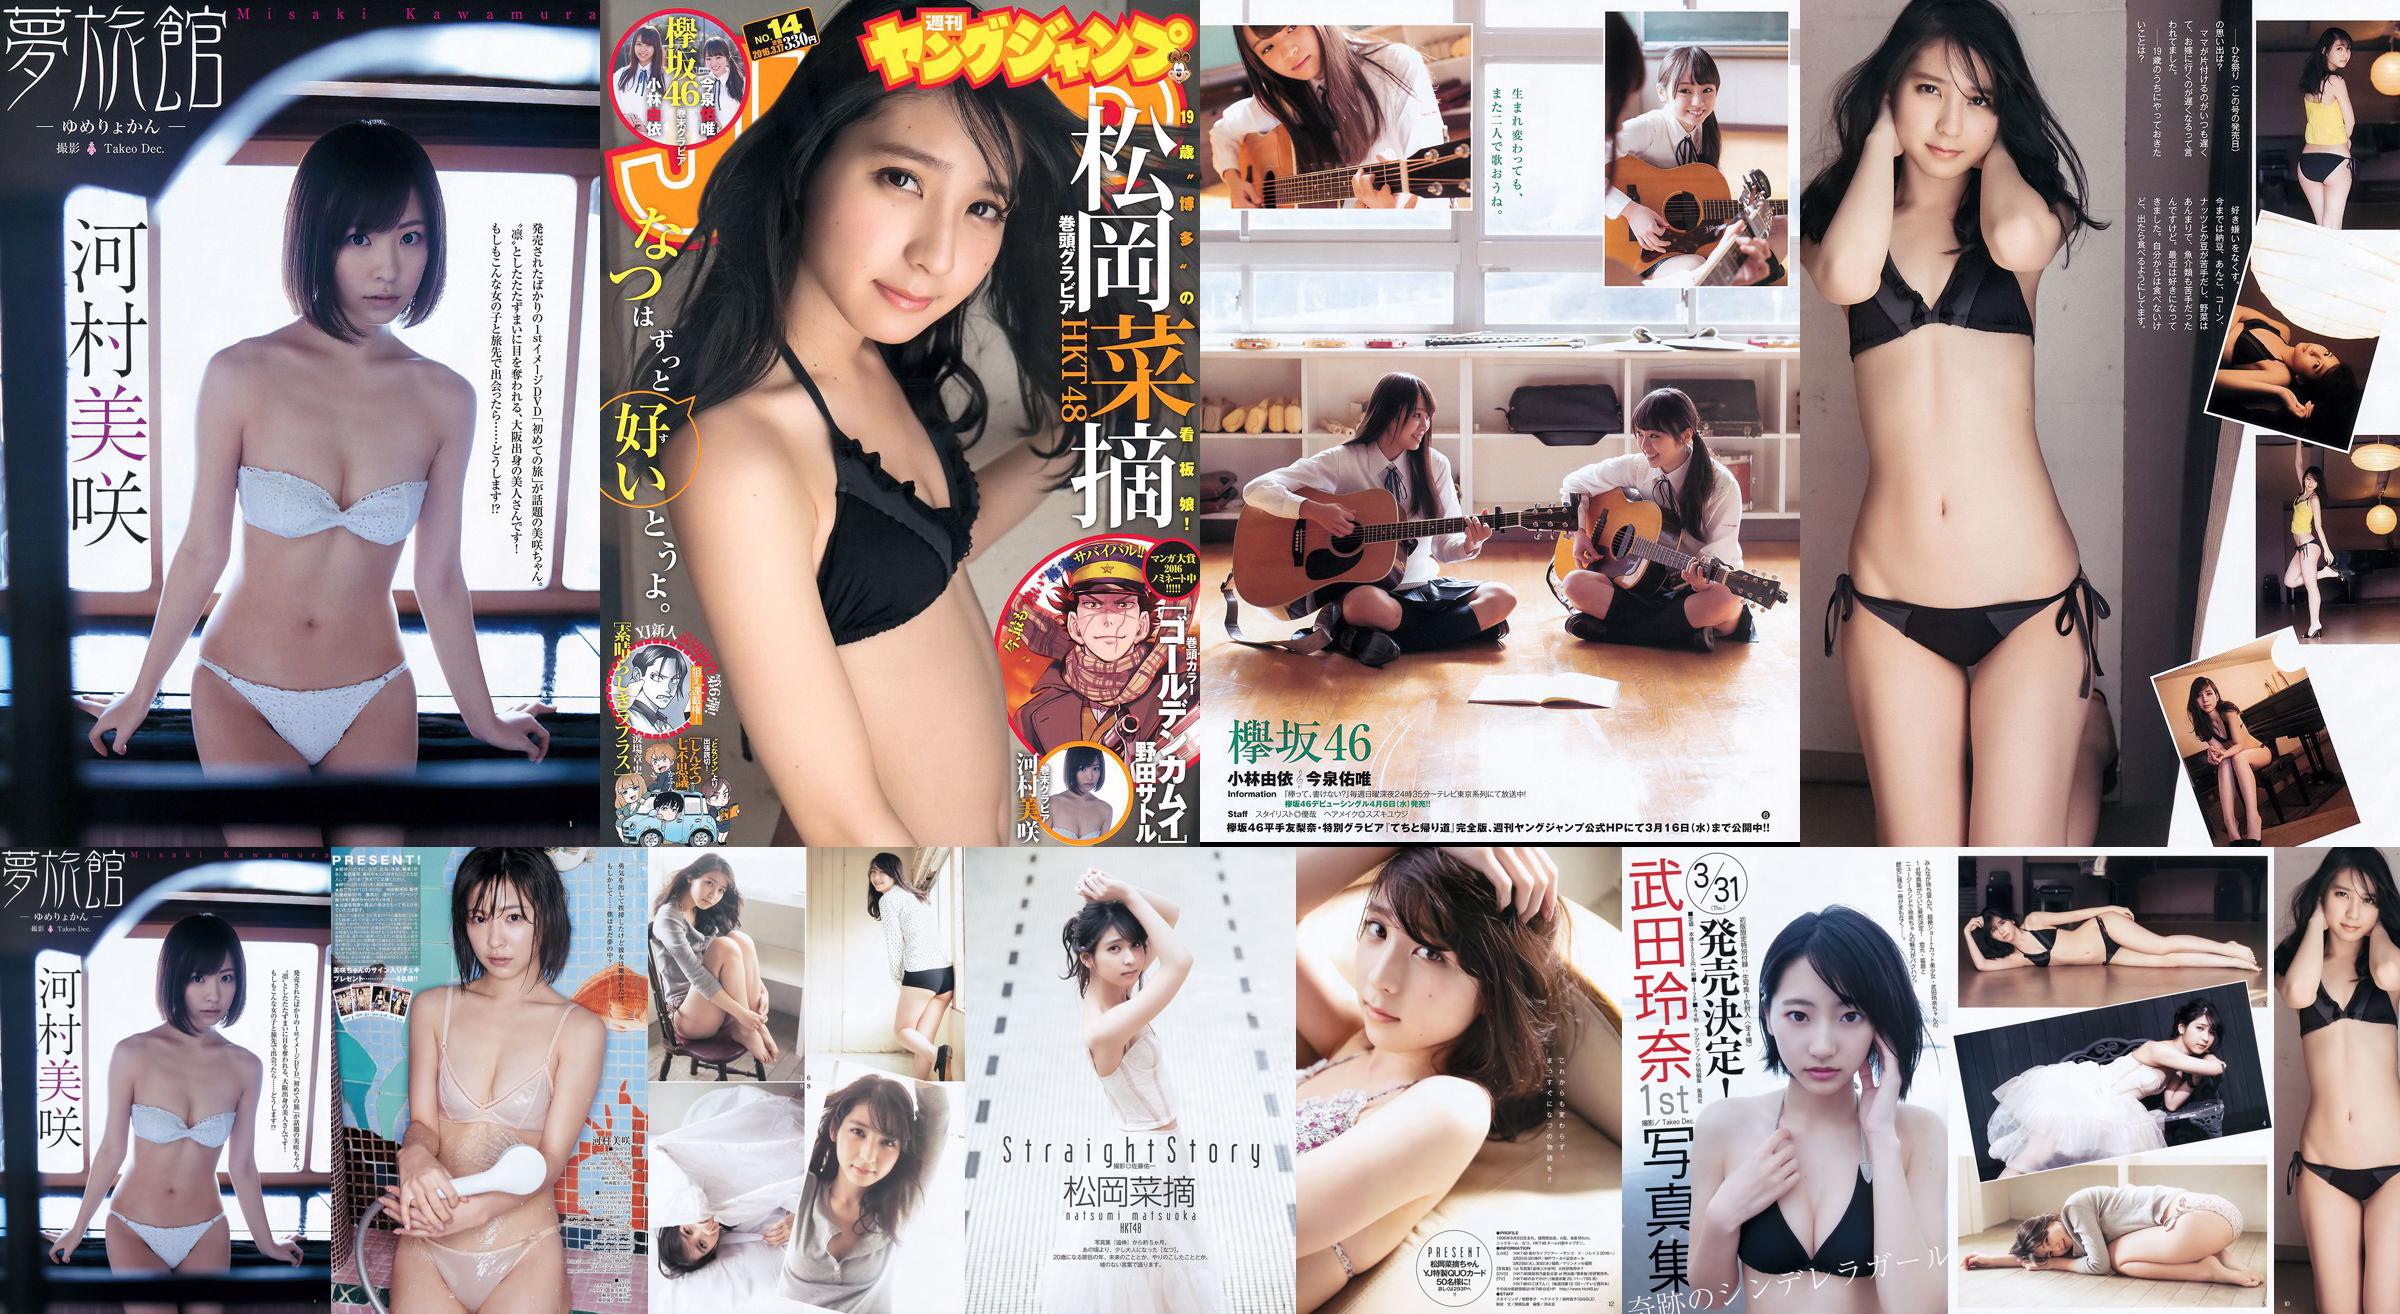 Selecciones de vegetales de Muraoka Yui Kobayashi Yui Imaizumi Misaki Kawamura [Salto joven semanal] Revista fotográfica n. ° 14 de 2016 No.dd999f Página 1